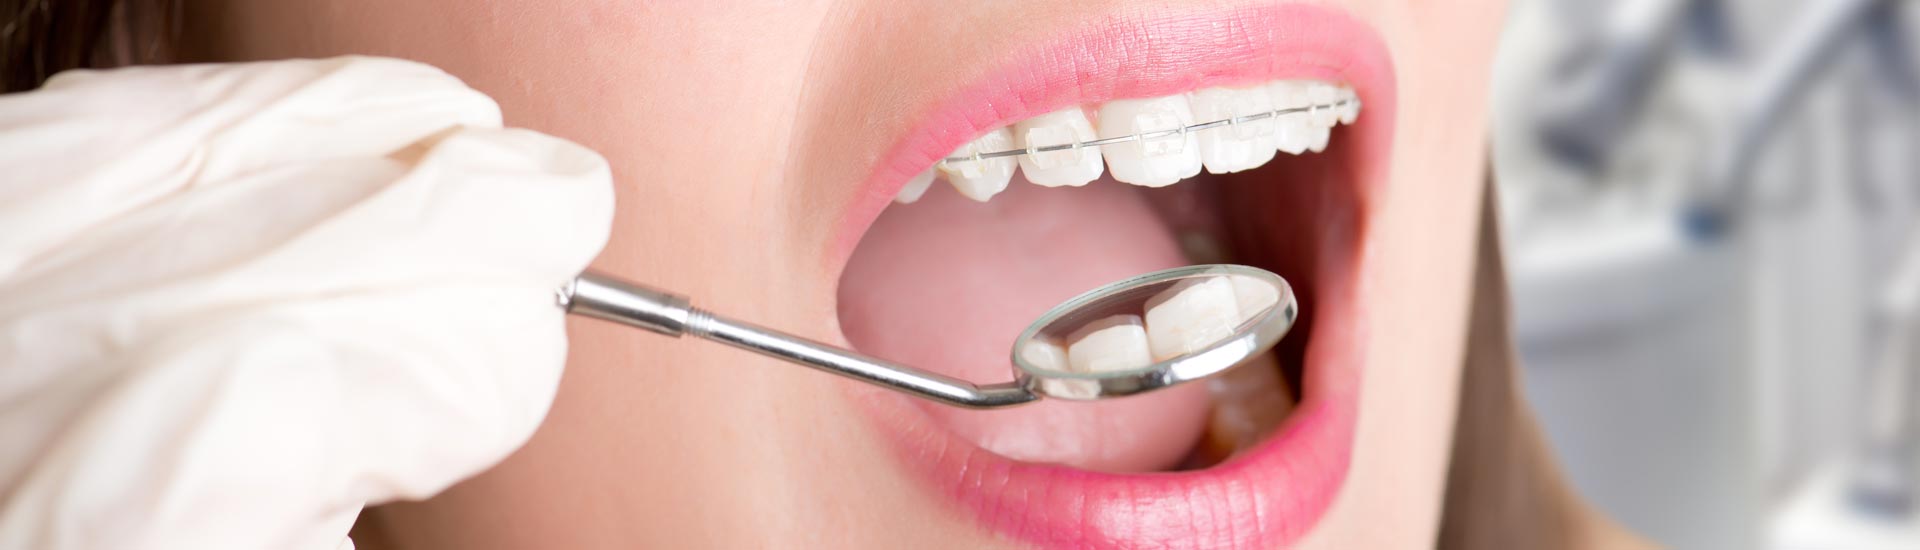 Ortodoncija | Naša ekspertiza